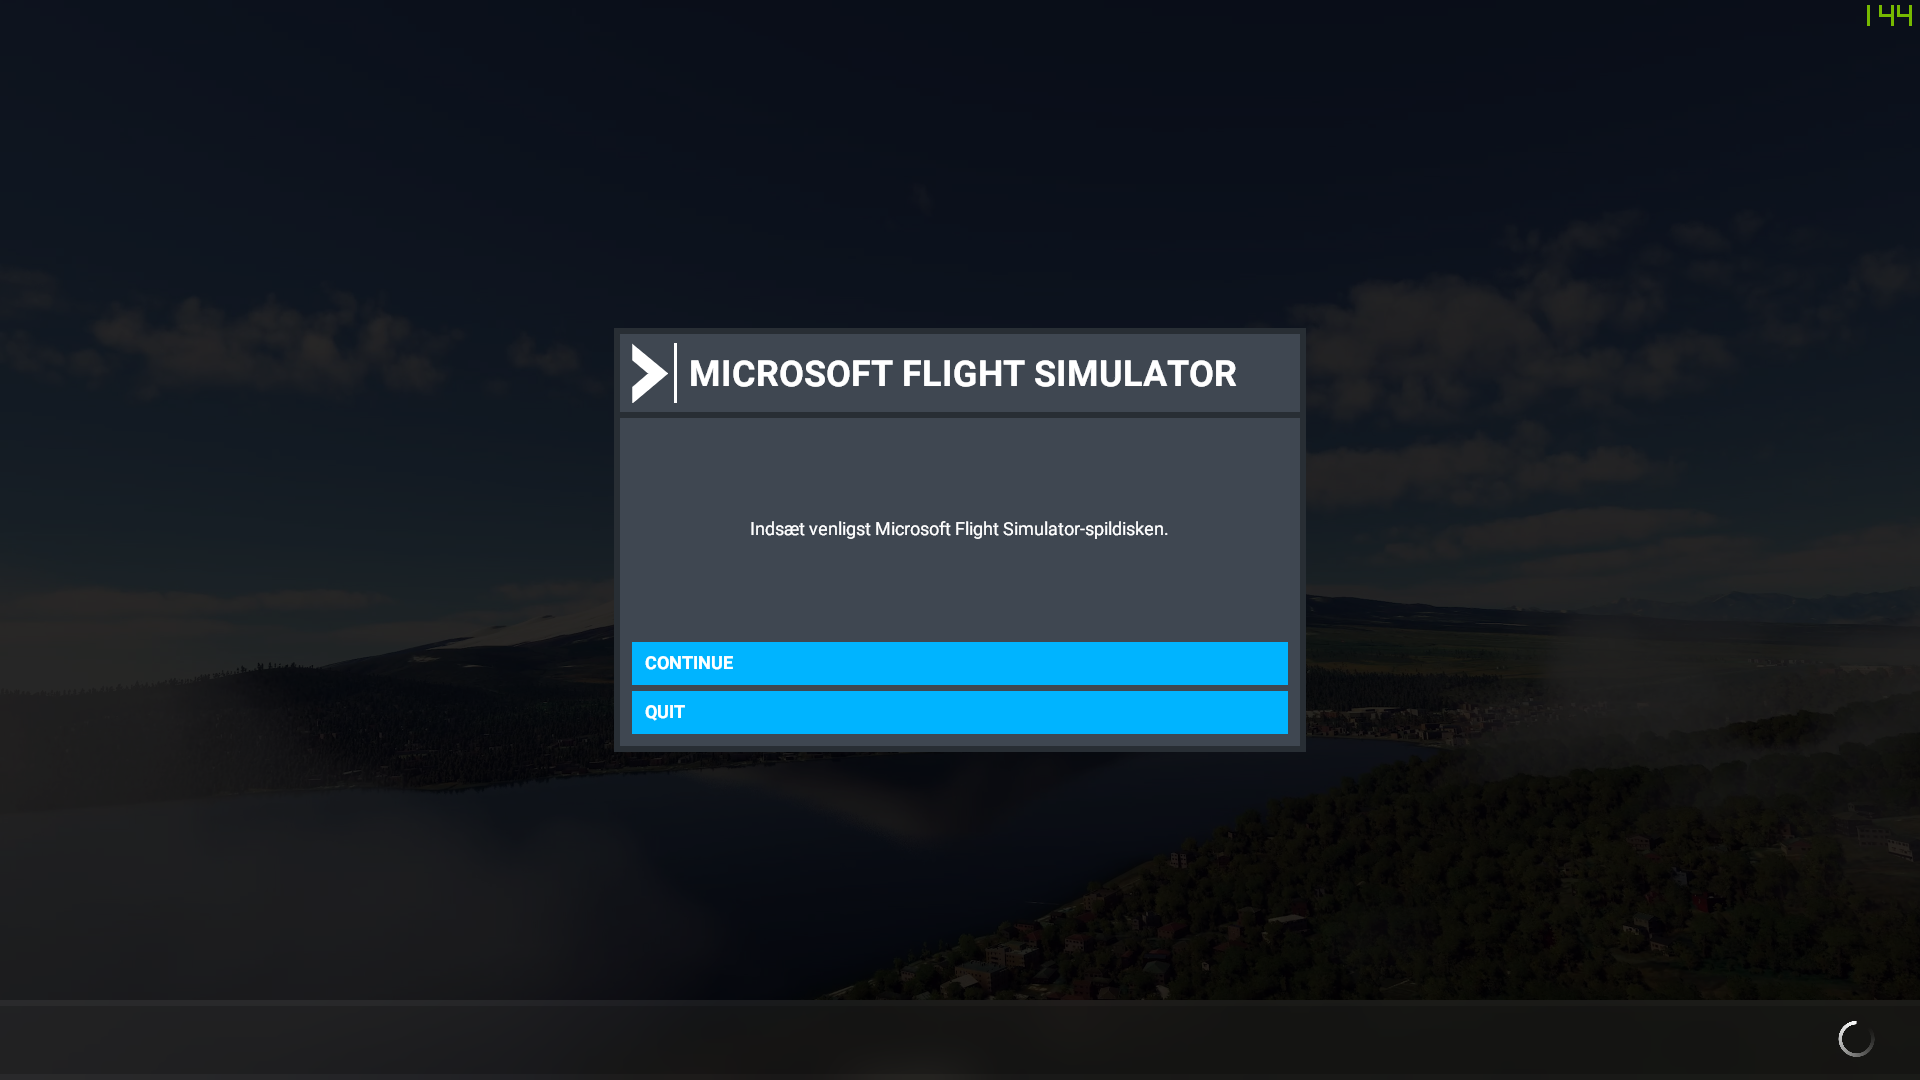 Missing Digital Ownership for Microsoft Flight Simulator 2020 8cfdff9e-0161-4c0b-9c79-b01d76a58351?upload=true.png